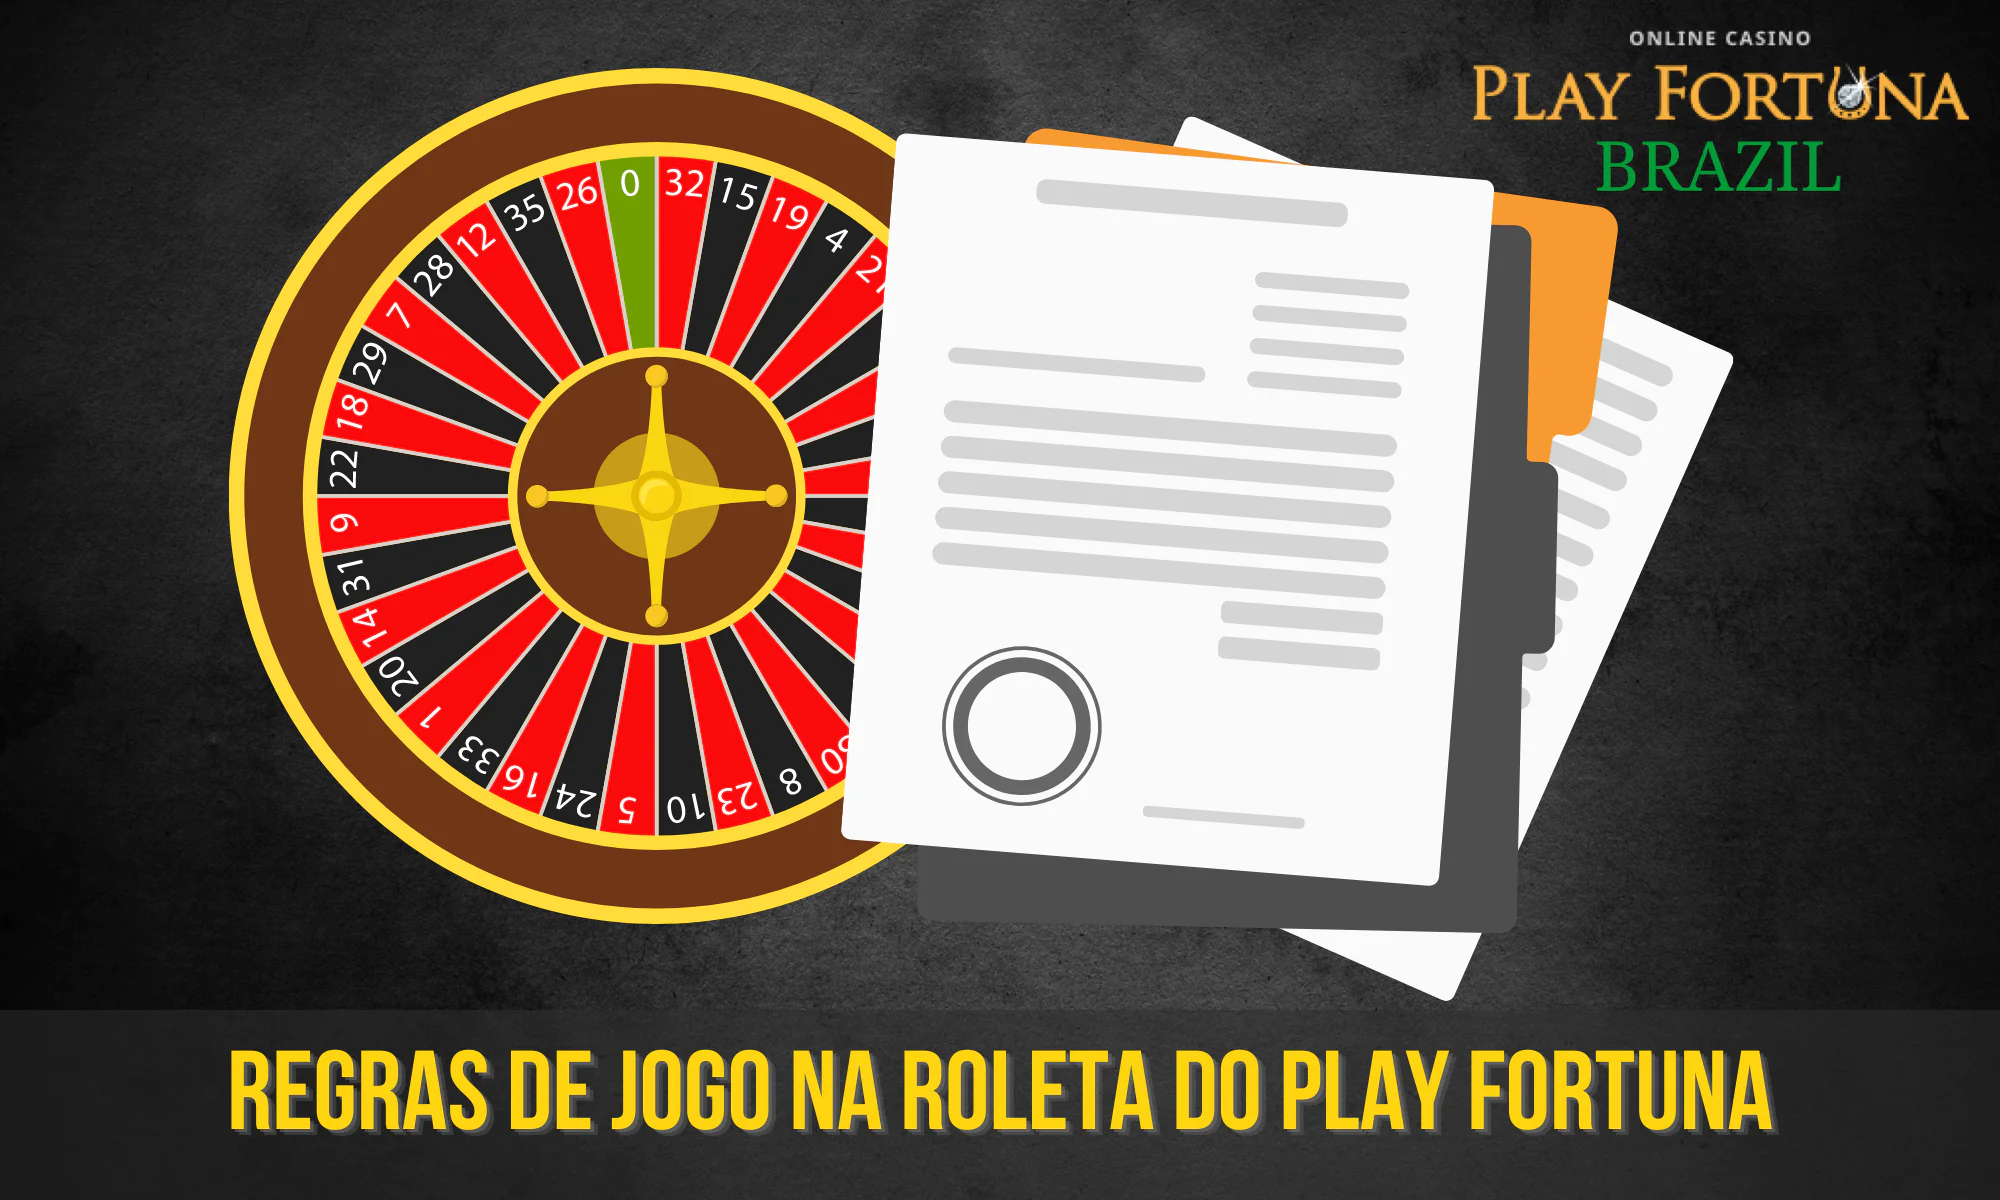 Há certas regras para jogar roleta no site da Play Fortuna